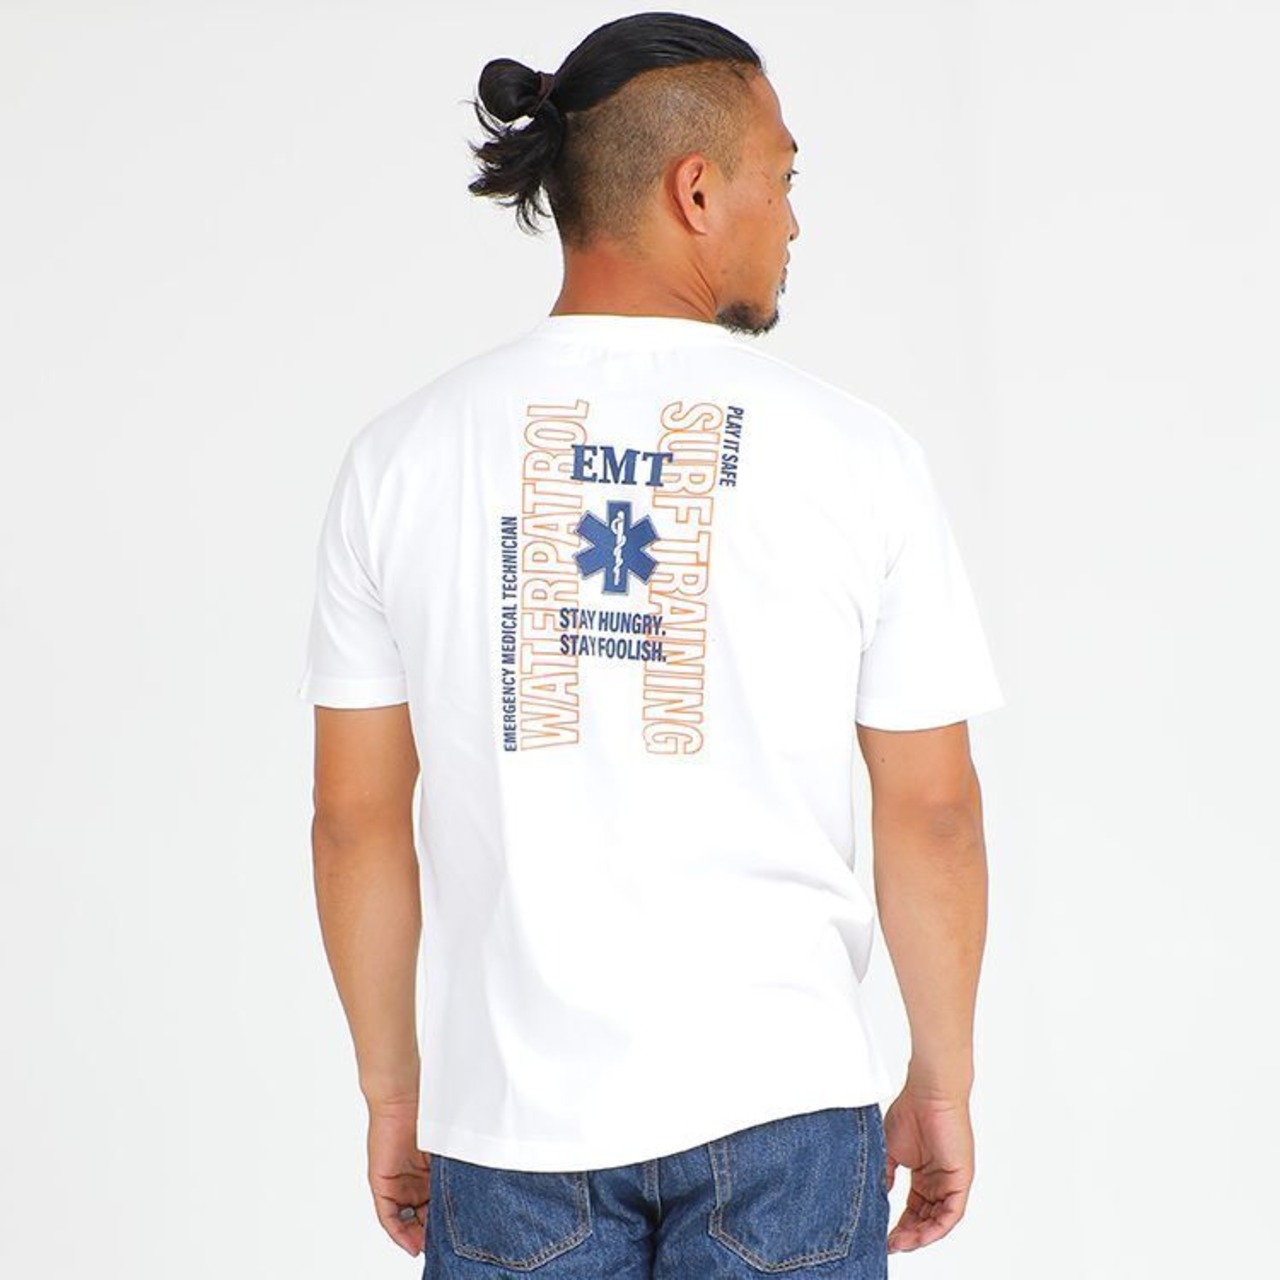 GUARD (ガード) 綿100% Tシャツ EMTデザイン s-275 ヘビーウェイト 厚手